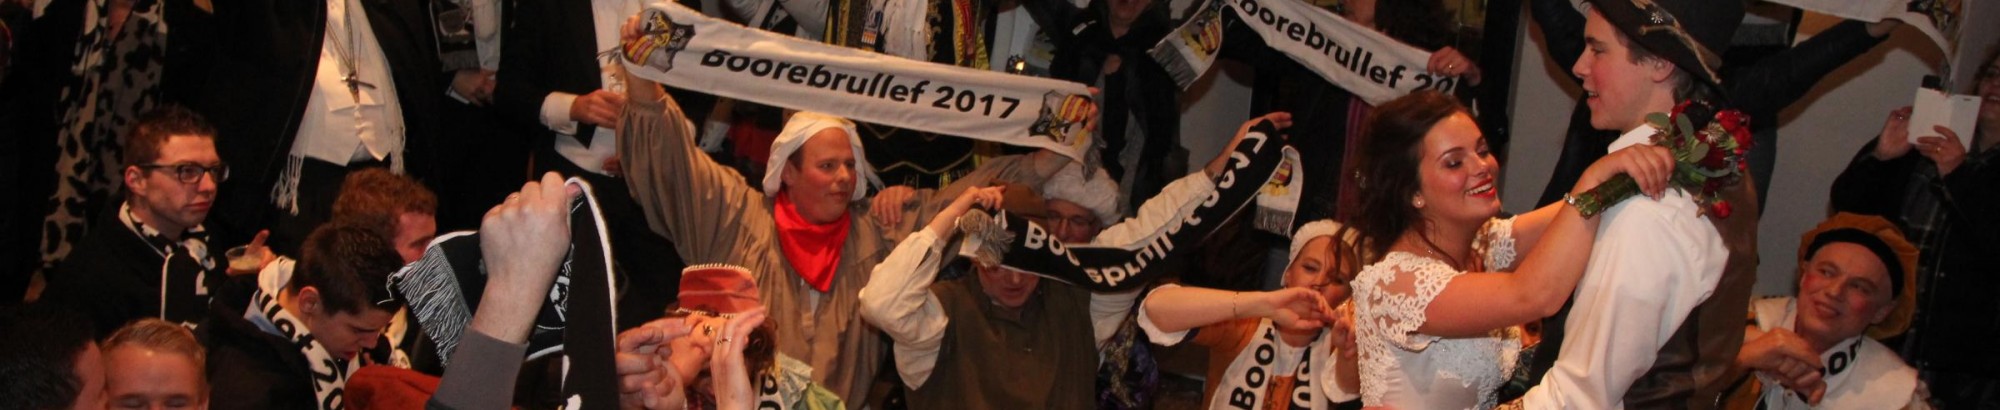 Boerenbruidspaar 2017 C.V. “D’n Dreumel” Horst